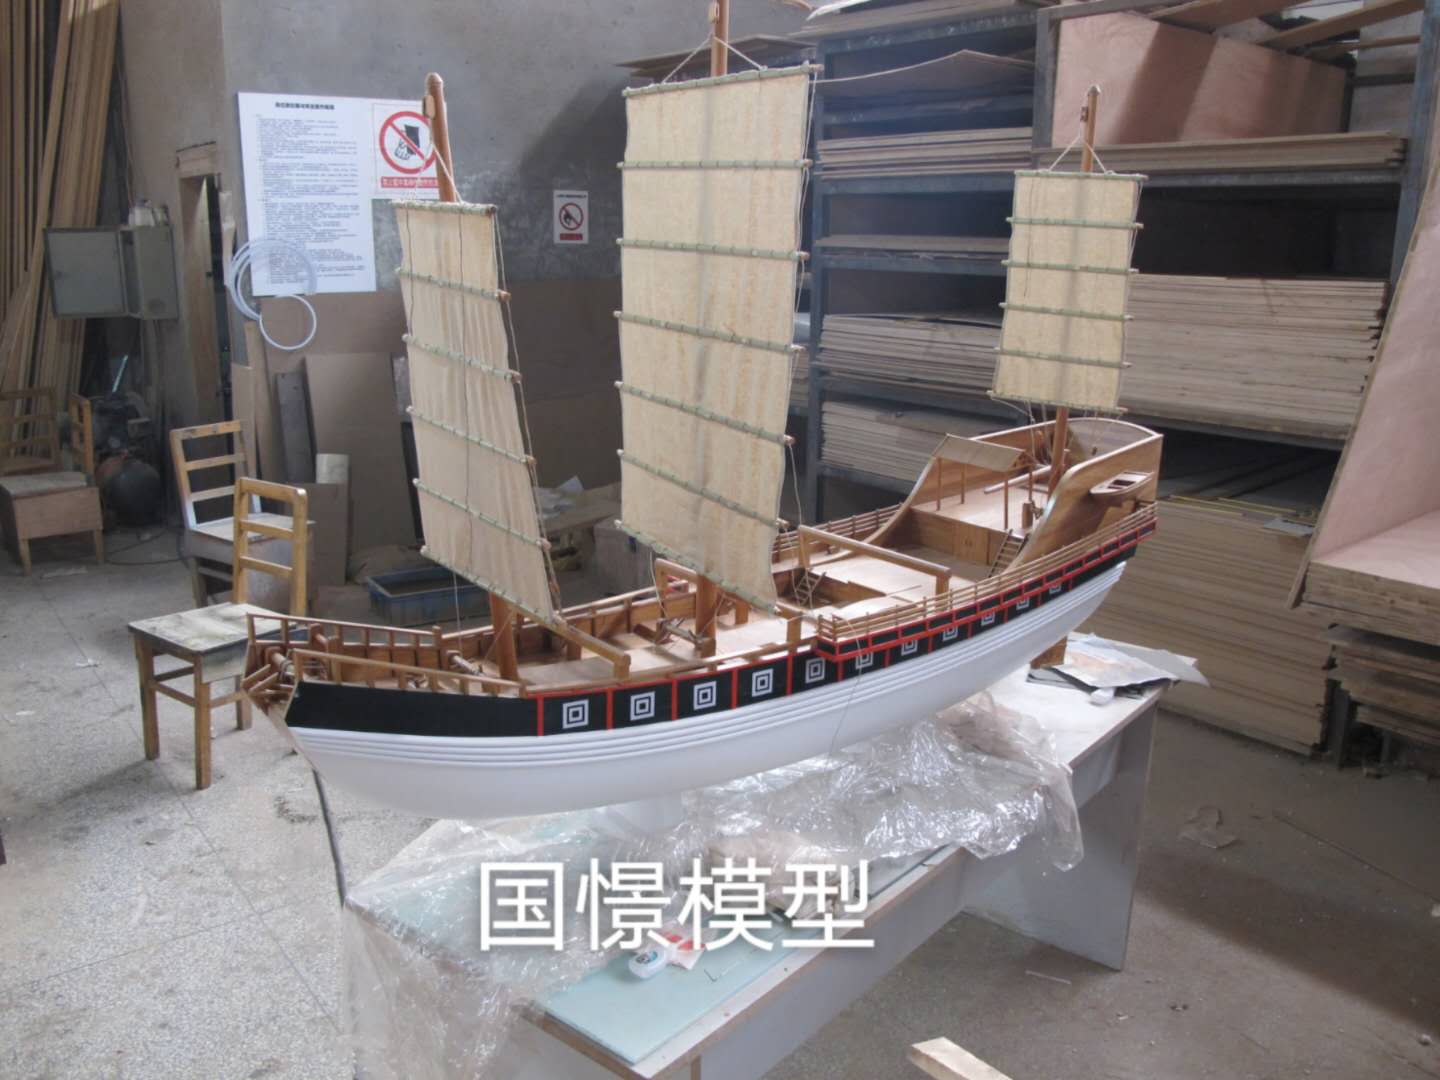 灌阳县船舶模型